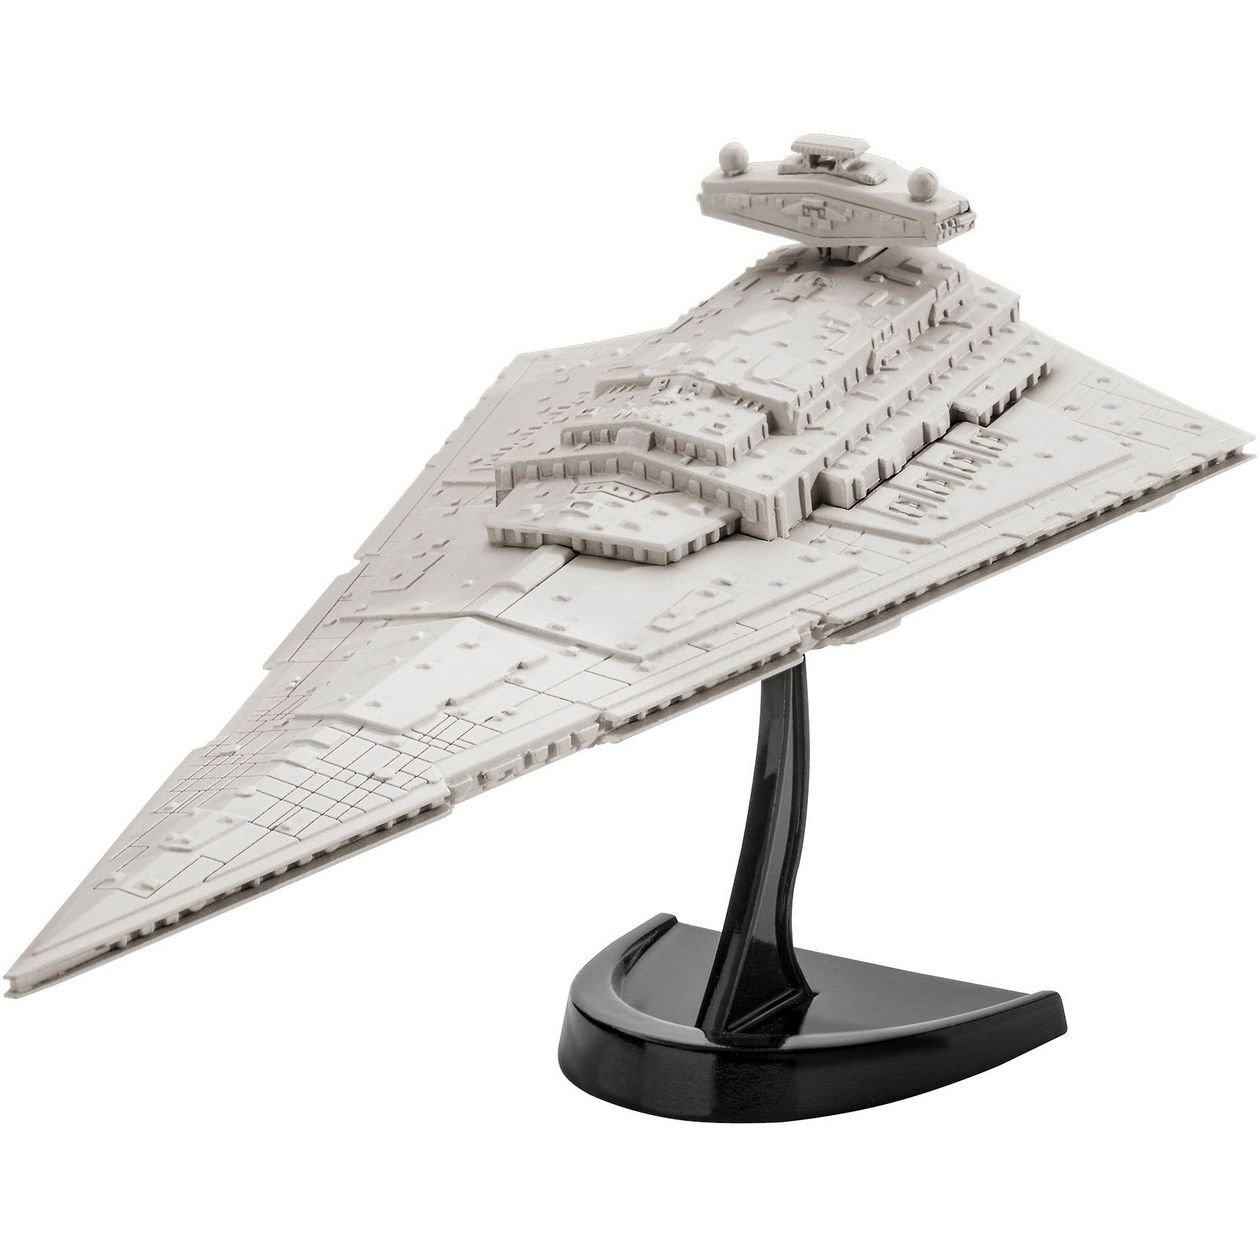 Сборная модель Revell Космический корабль Imperial Star Destroyer, уровень 3, масштаб 1:12300, 21 деталь (RVL-03609) - фото 3